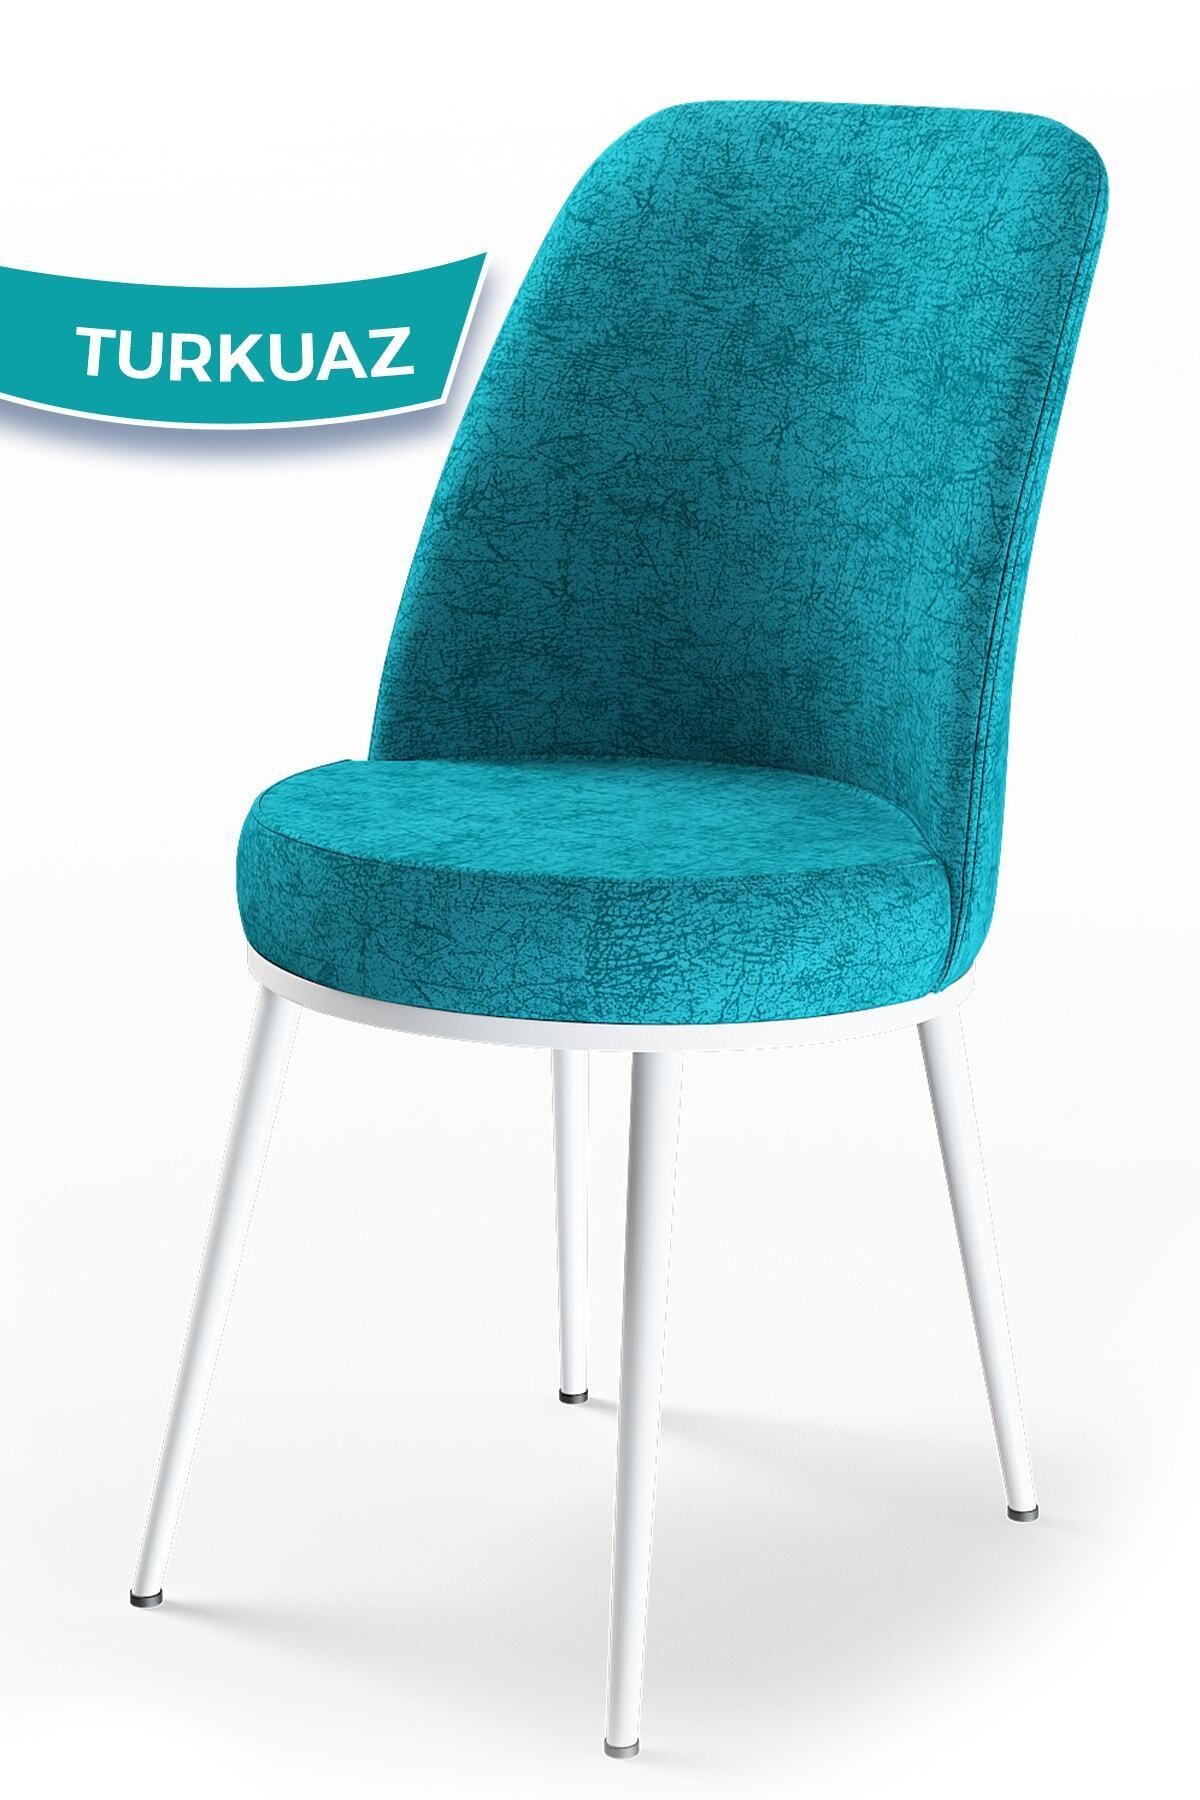 Canisa Concept Dexa Serisi Turkuaz Renk Sandalye Mutfak Sandalyesi, Yemek Sandalyesi Ayaklar Beyaz